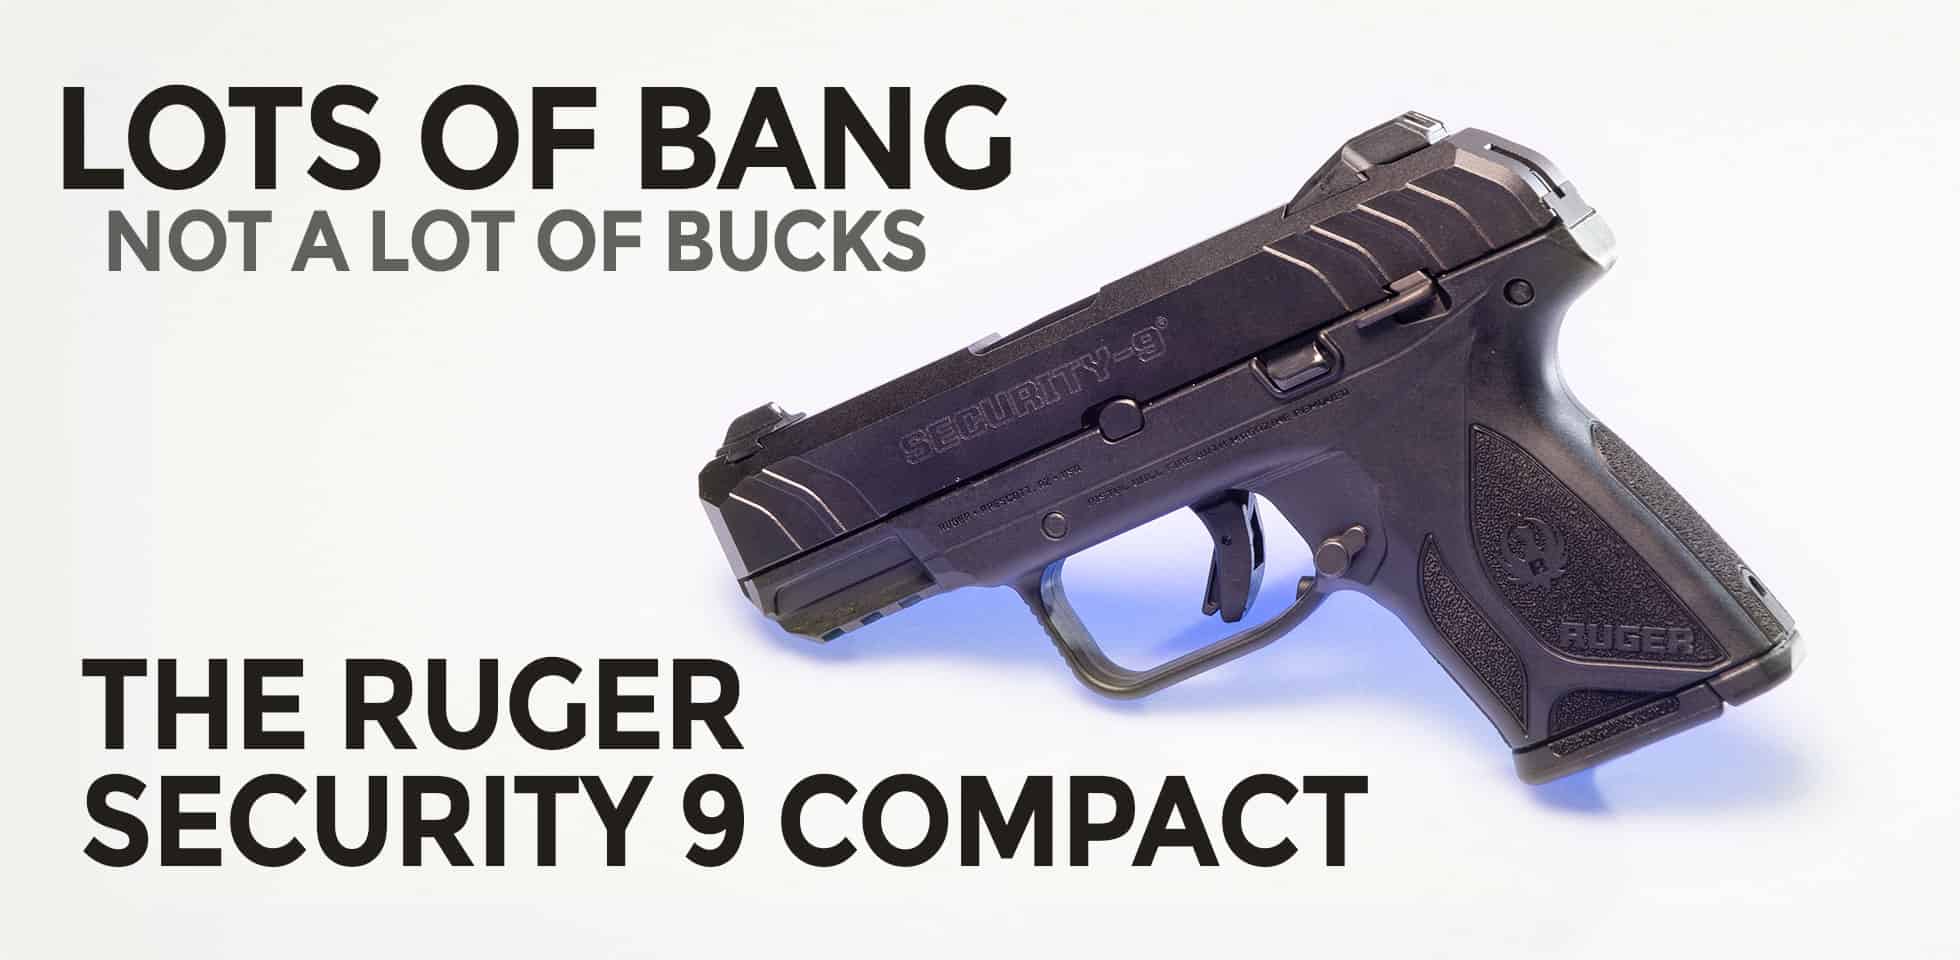 ruger 9mm handguns